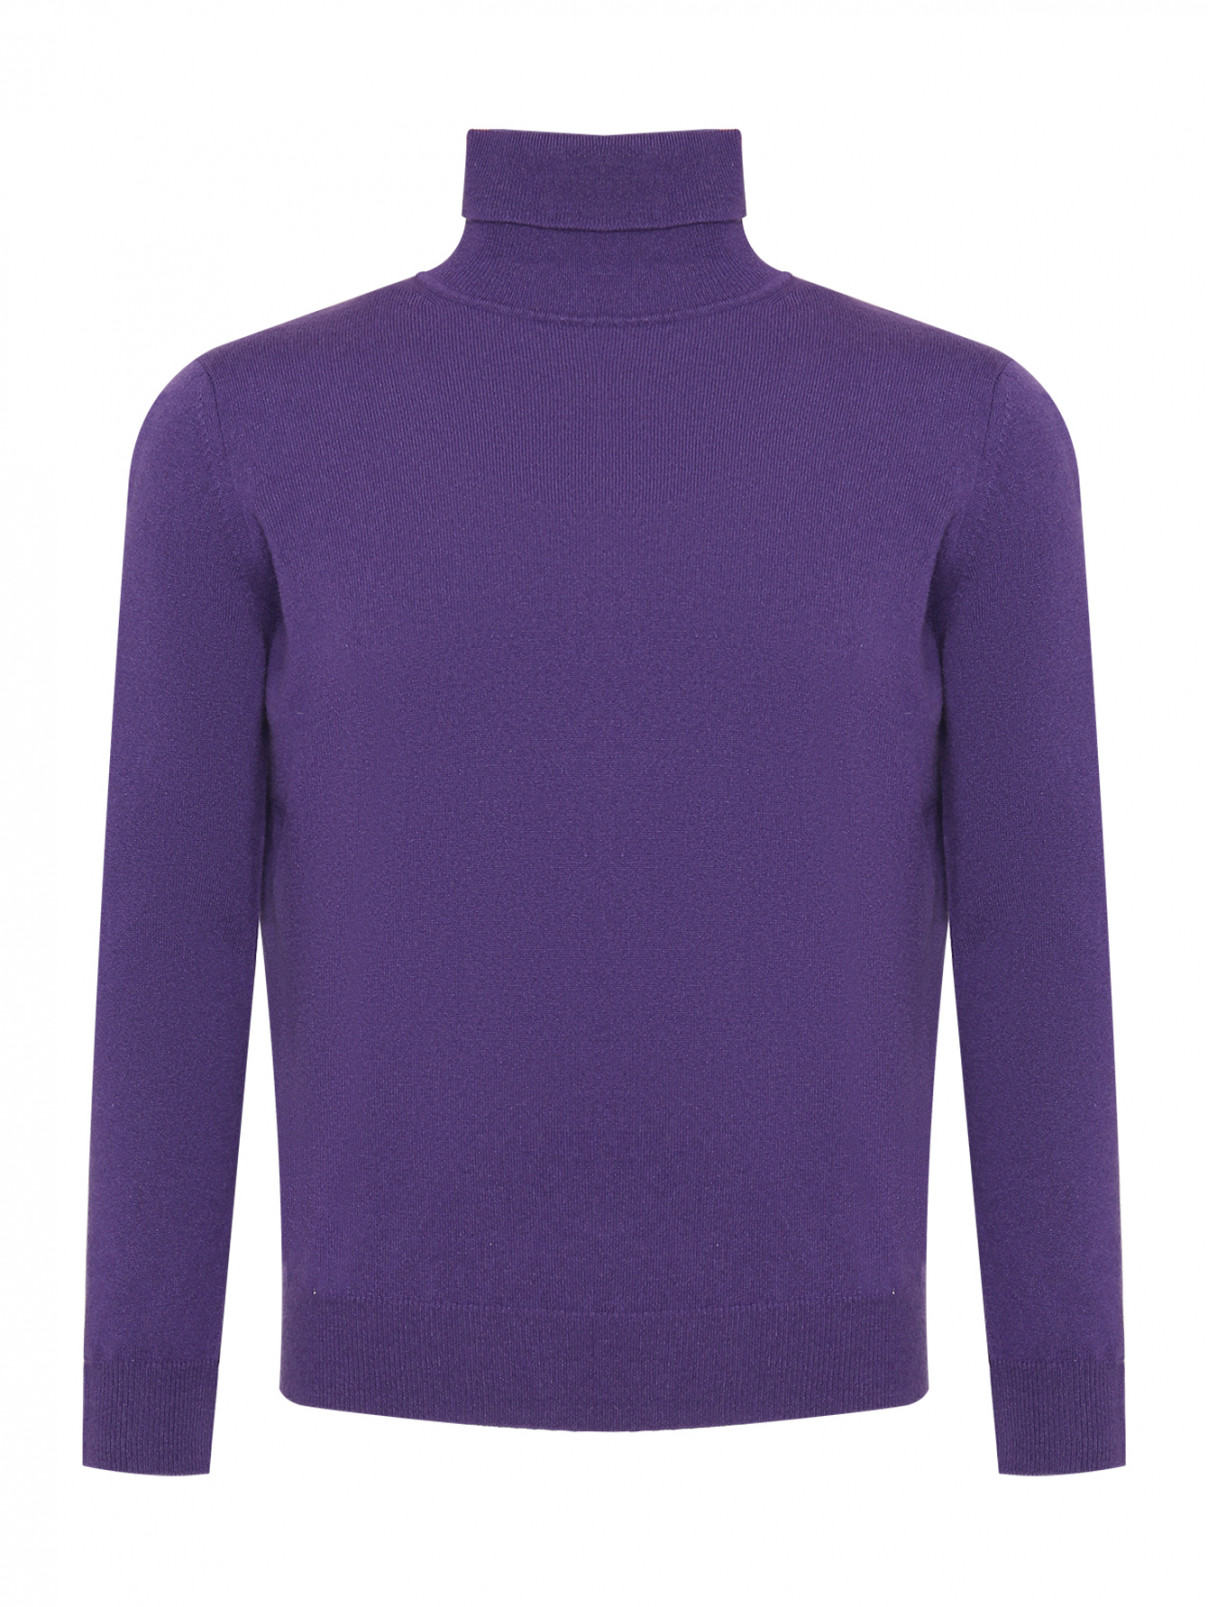 Базовый свитер из кашемира Kangra Cashmere  –  Общий вид  – Цвет:  Фиолетовый